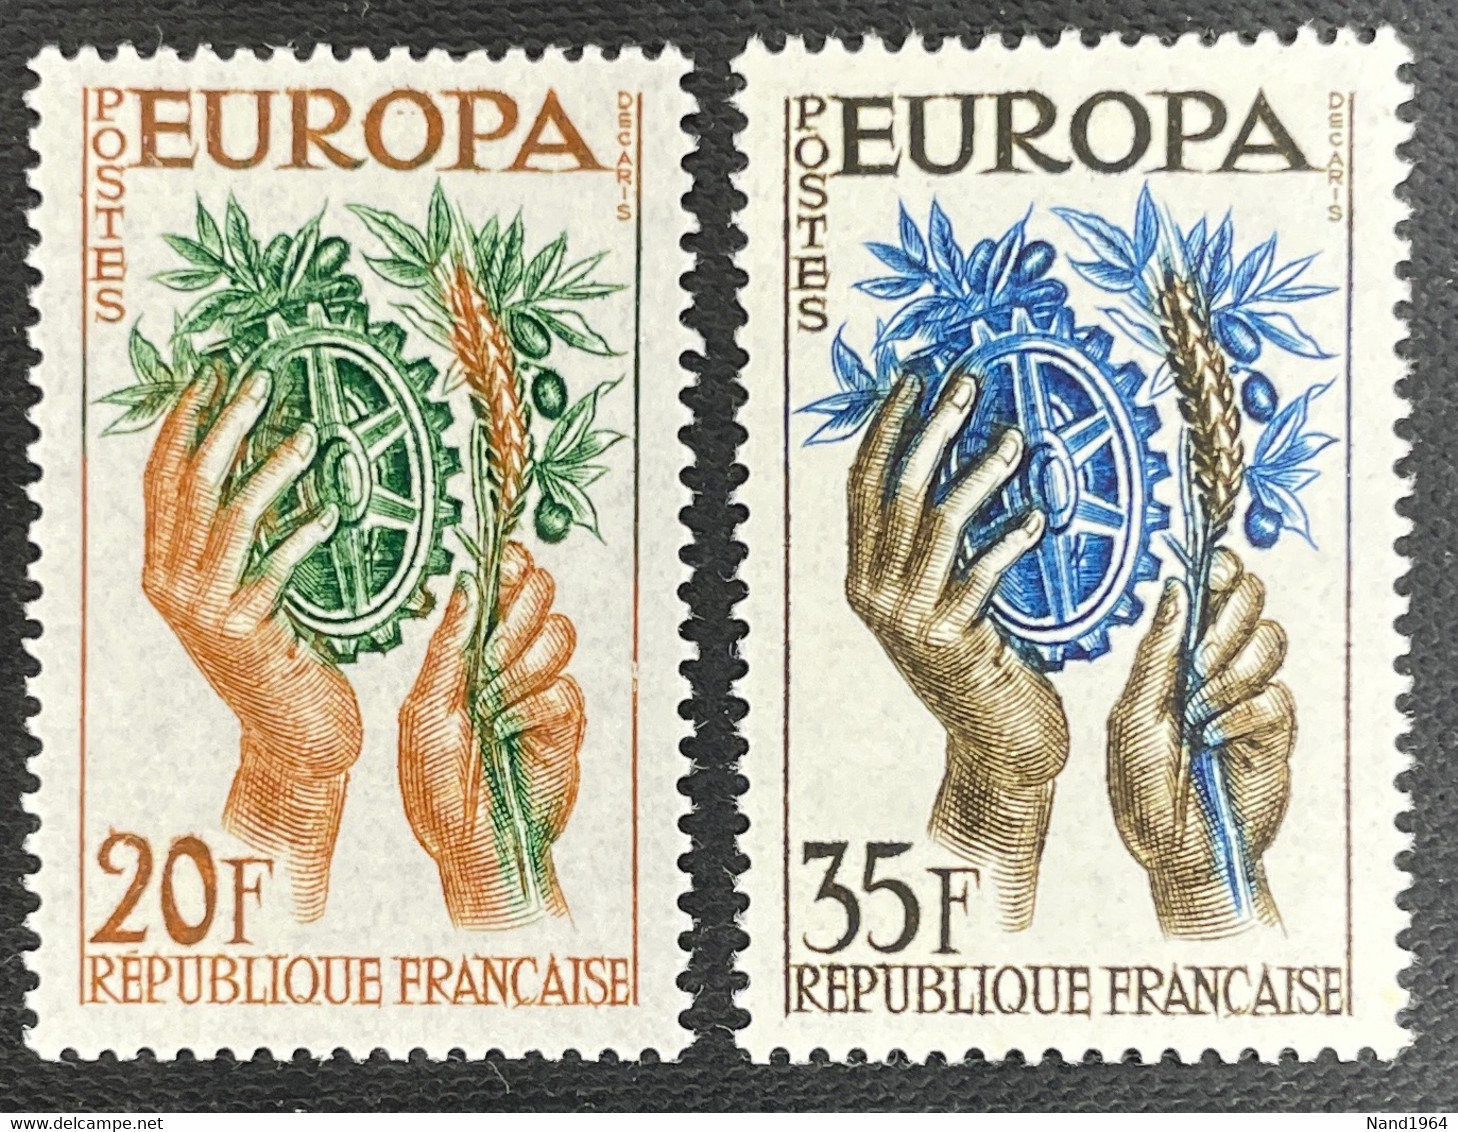 Europa CEPT 1957 Postfris - 1956